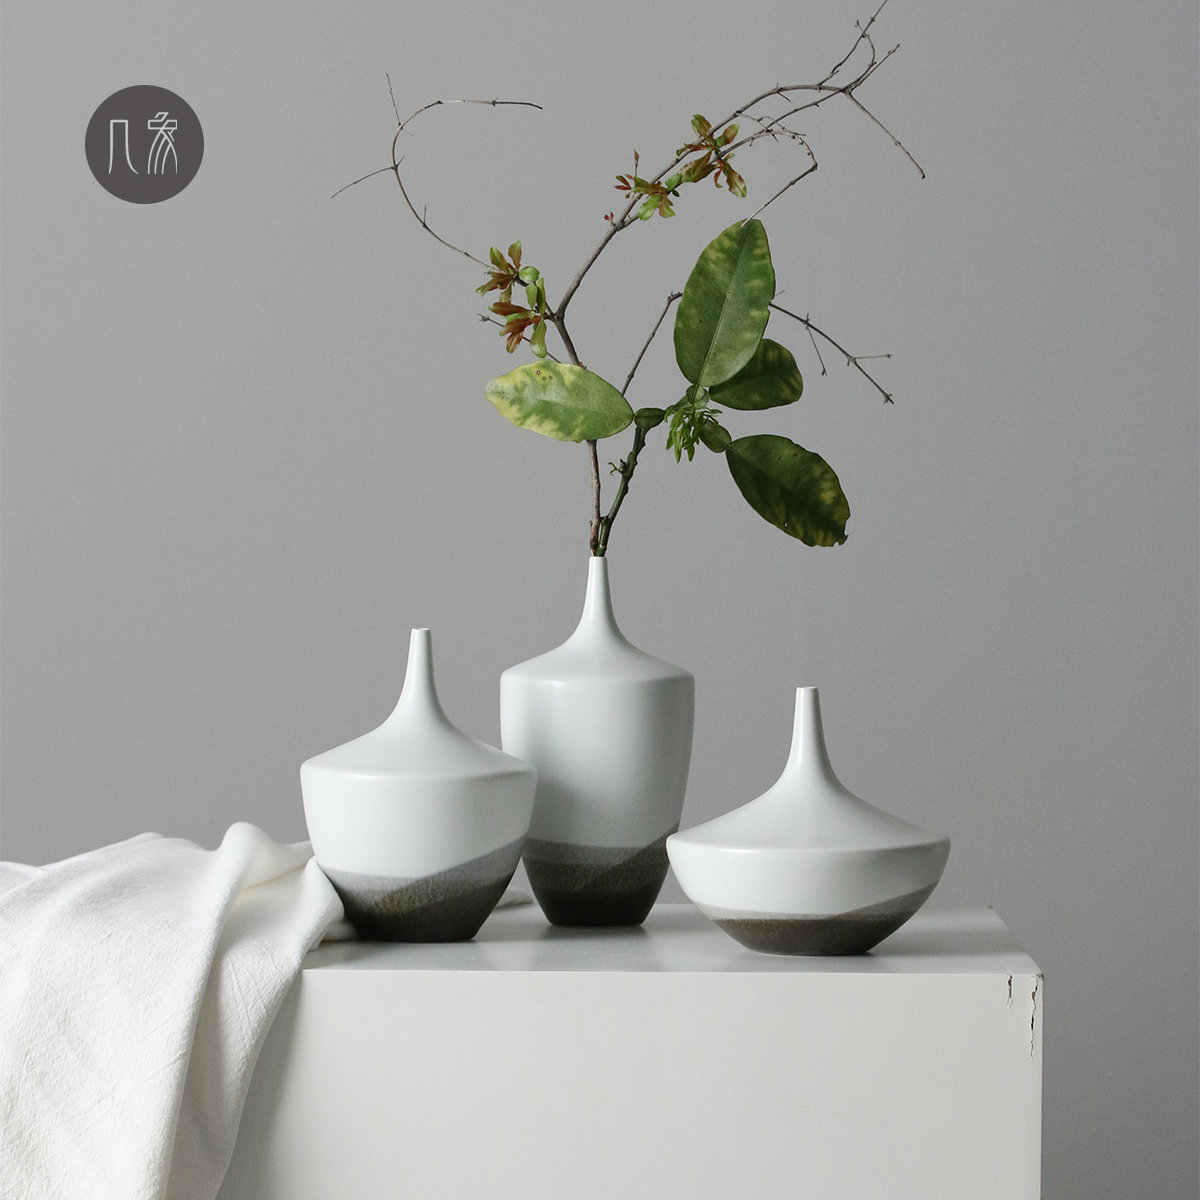 新中式小号陶瓷花瓶玄关餐桌客厅桌面禅意现代简约家居装饰品摆件